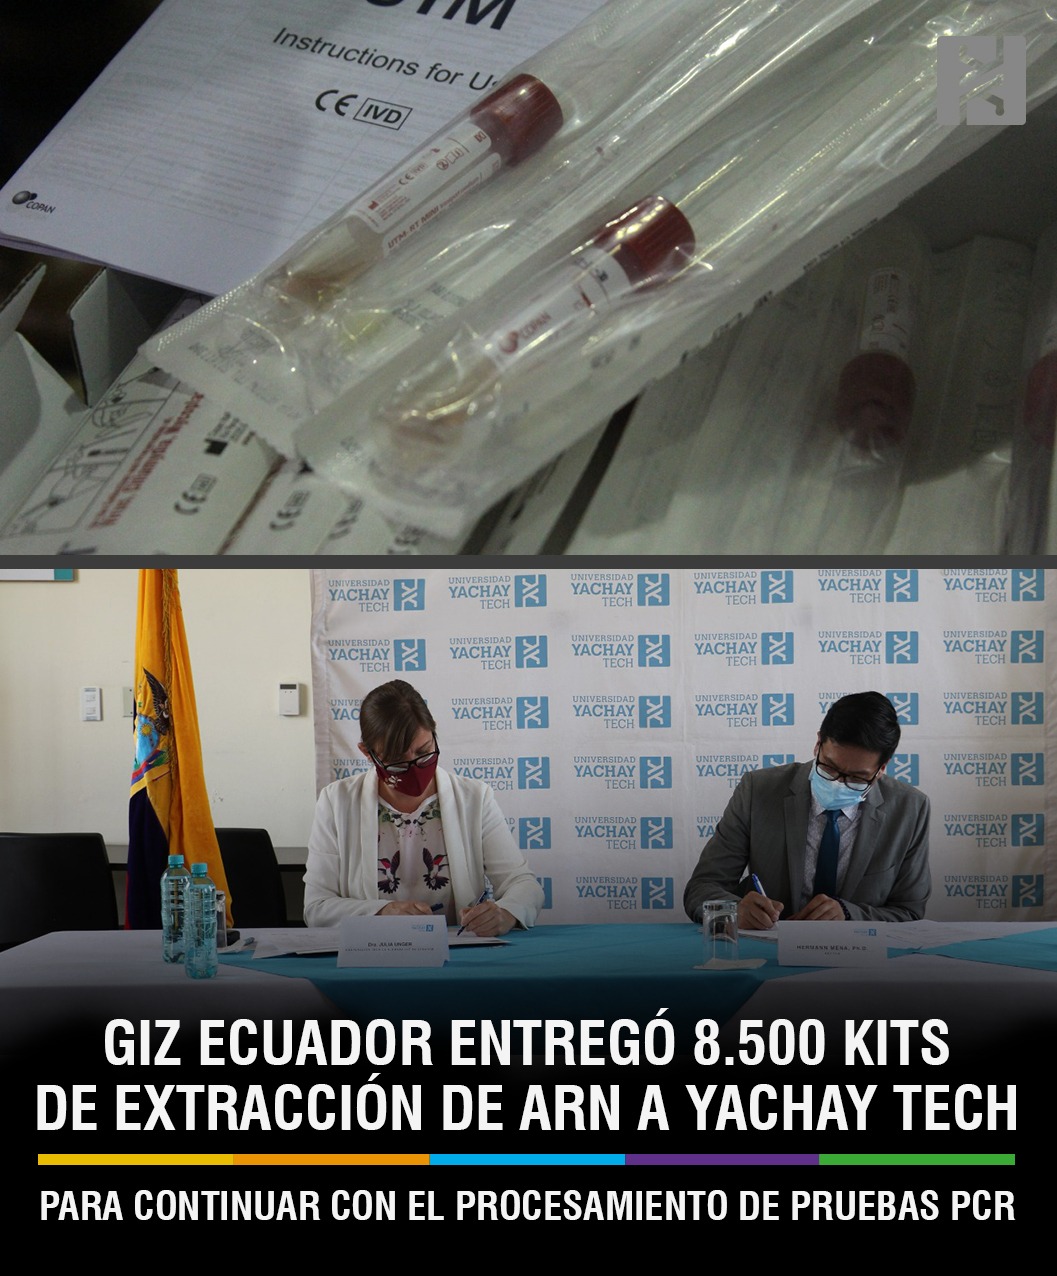 GIZ ECUADOR ENTREGÓ 8.500 KITS DE EXTRACCIÓN DE ARN A YACHAY TECH PARA CONTINUAR CON EL PROCESAMIENTO DE PRUEBAS PCR